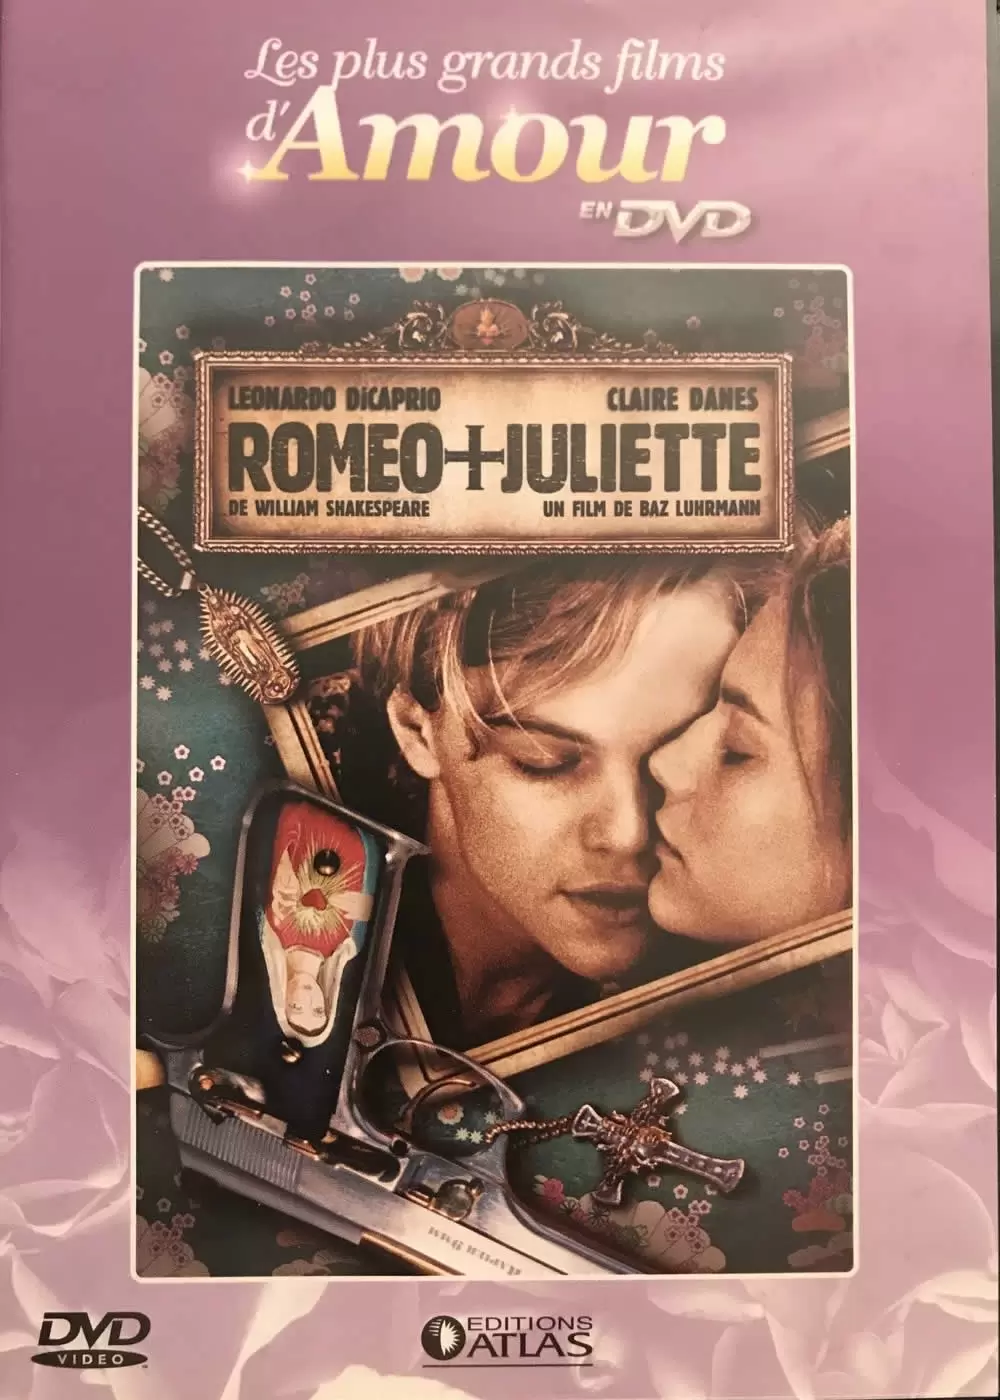 Les plus grands films d\'amour en DVD - Roméo + Juliette